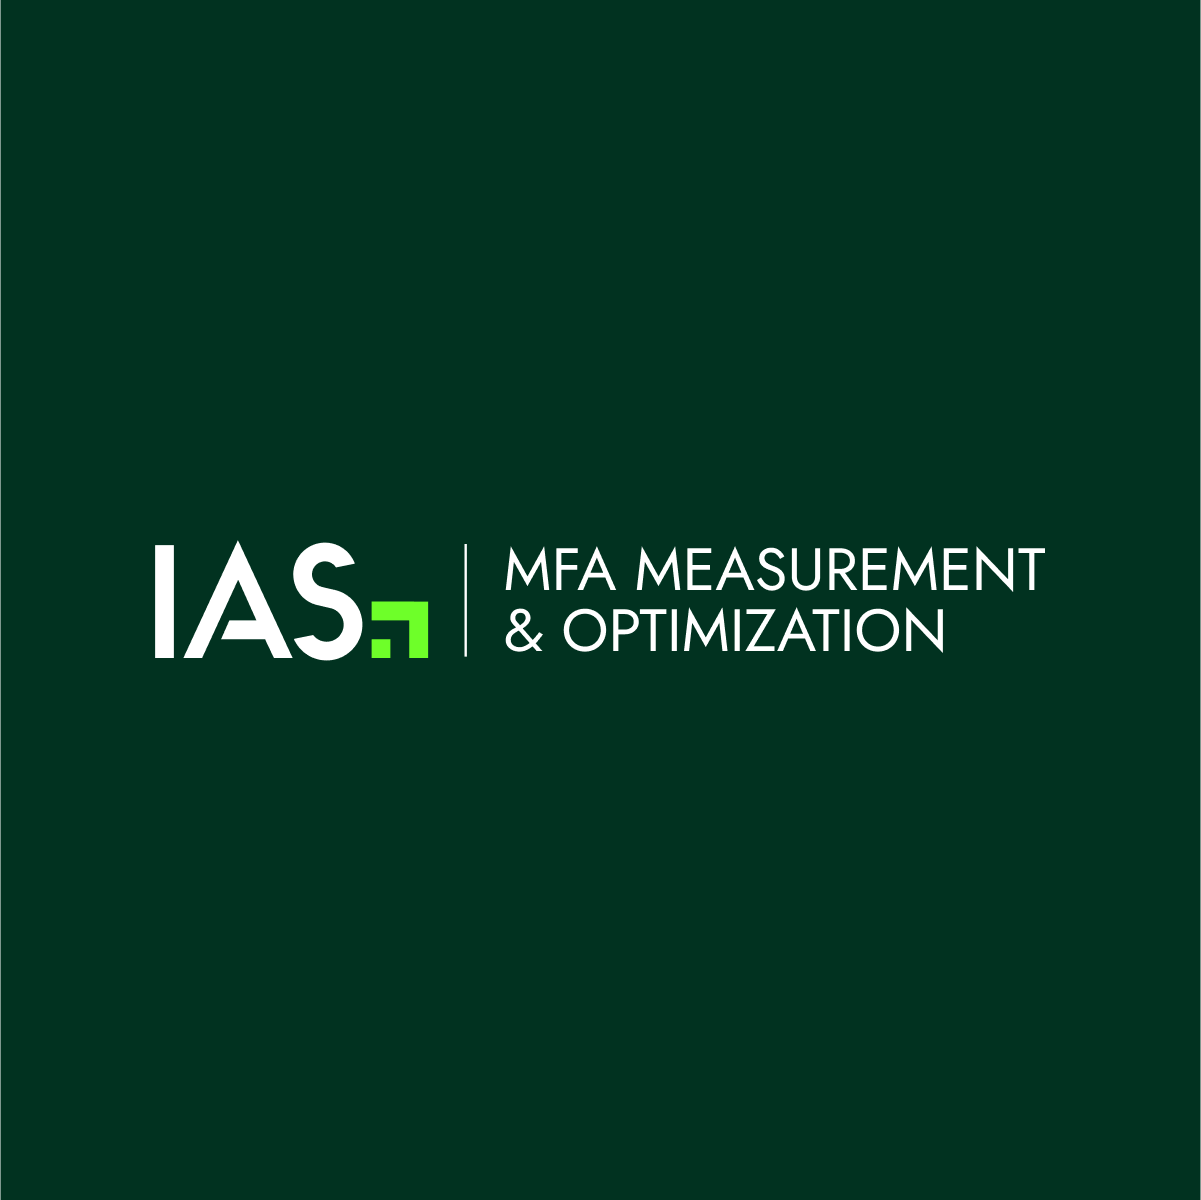 IAS espande la soluzione di misurazione e ottimizzazione dei siti “Made for Advertising” (MFA) guidata dall’intelligenza artificiale con una soluzione innovativa di rilevazione e filtro dell’Ad Clutter